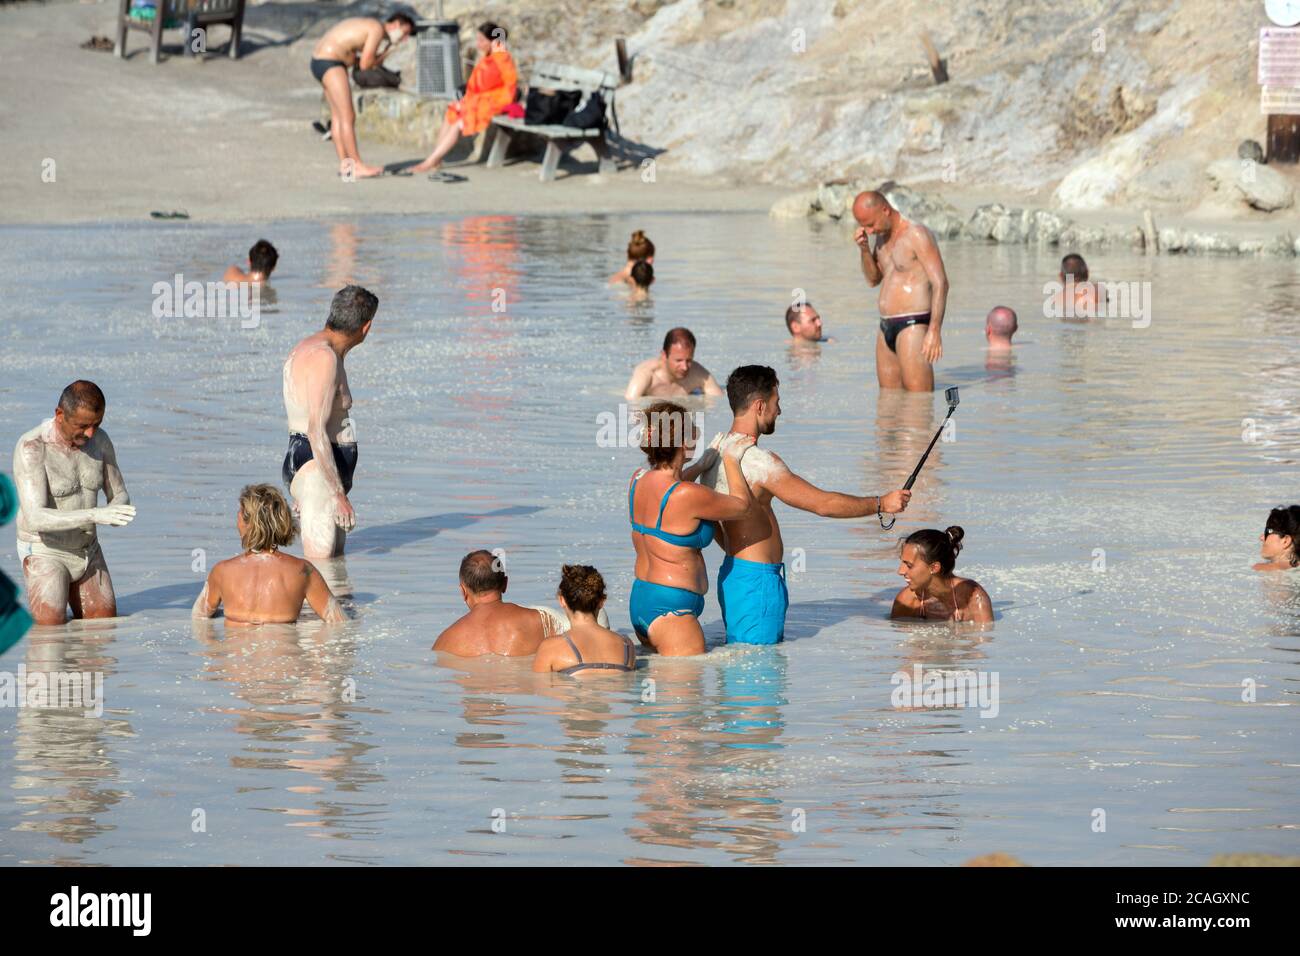 20.08.2018, Vulcano, Sizilien, Italien - Touristen und Einheimische nehmen ein Schwefelbad, ein Heilbad im Schwefelschlamm. Ein Mann filmt sich mit seinem Smartphone o Stockfoto